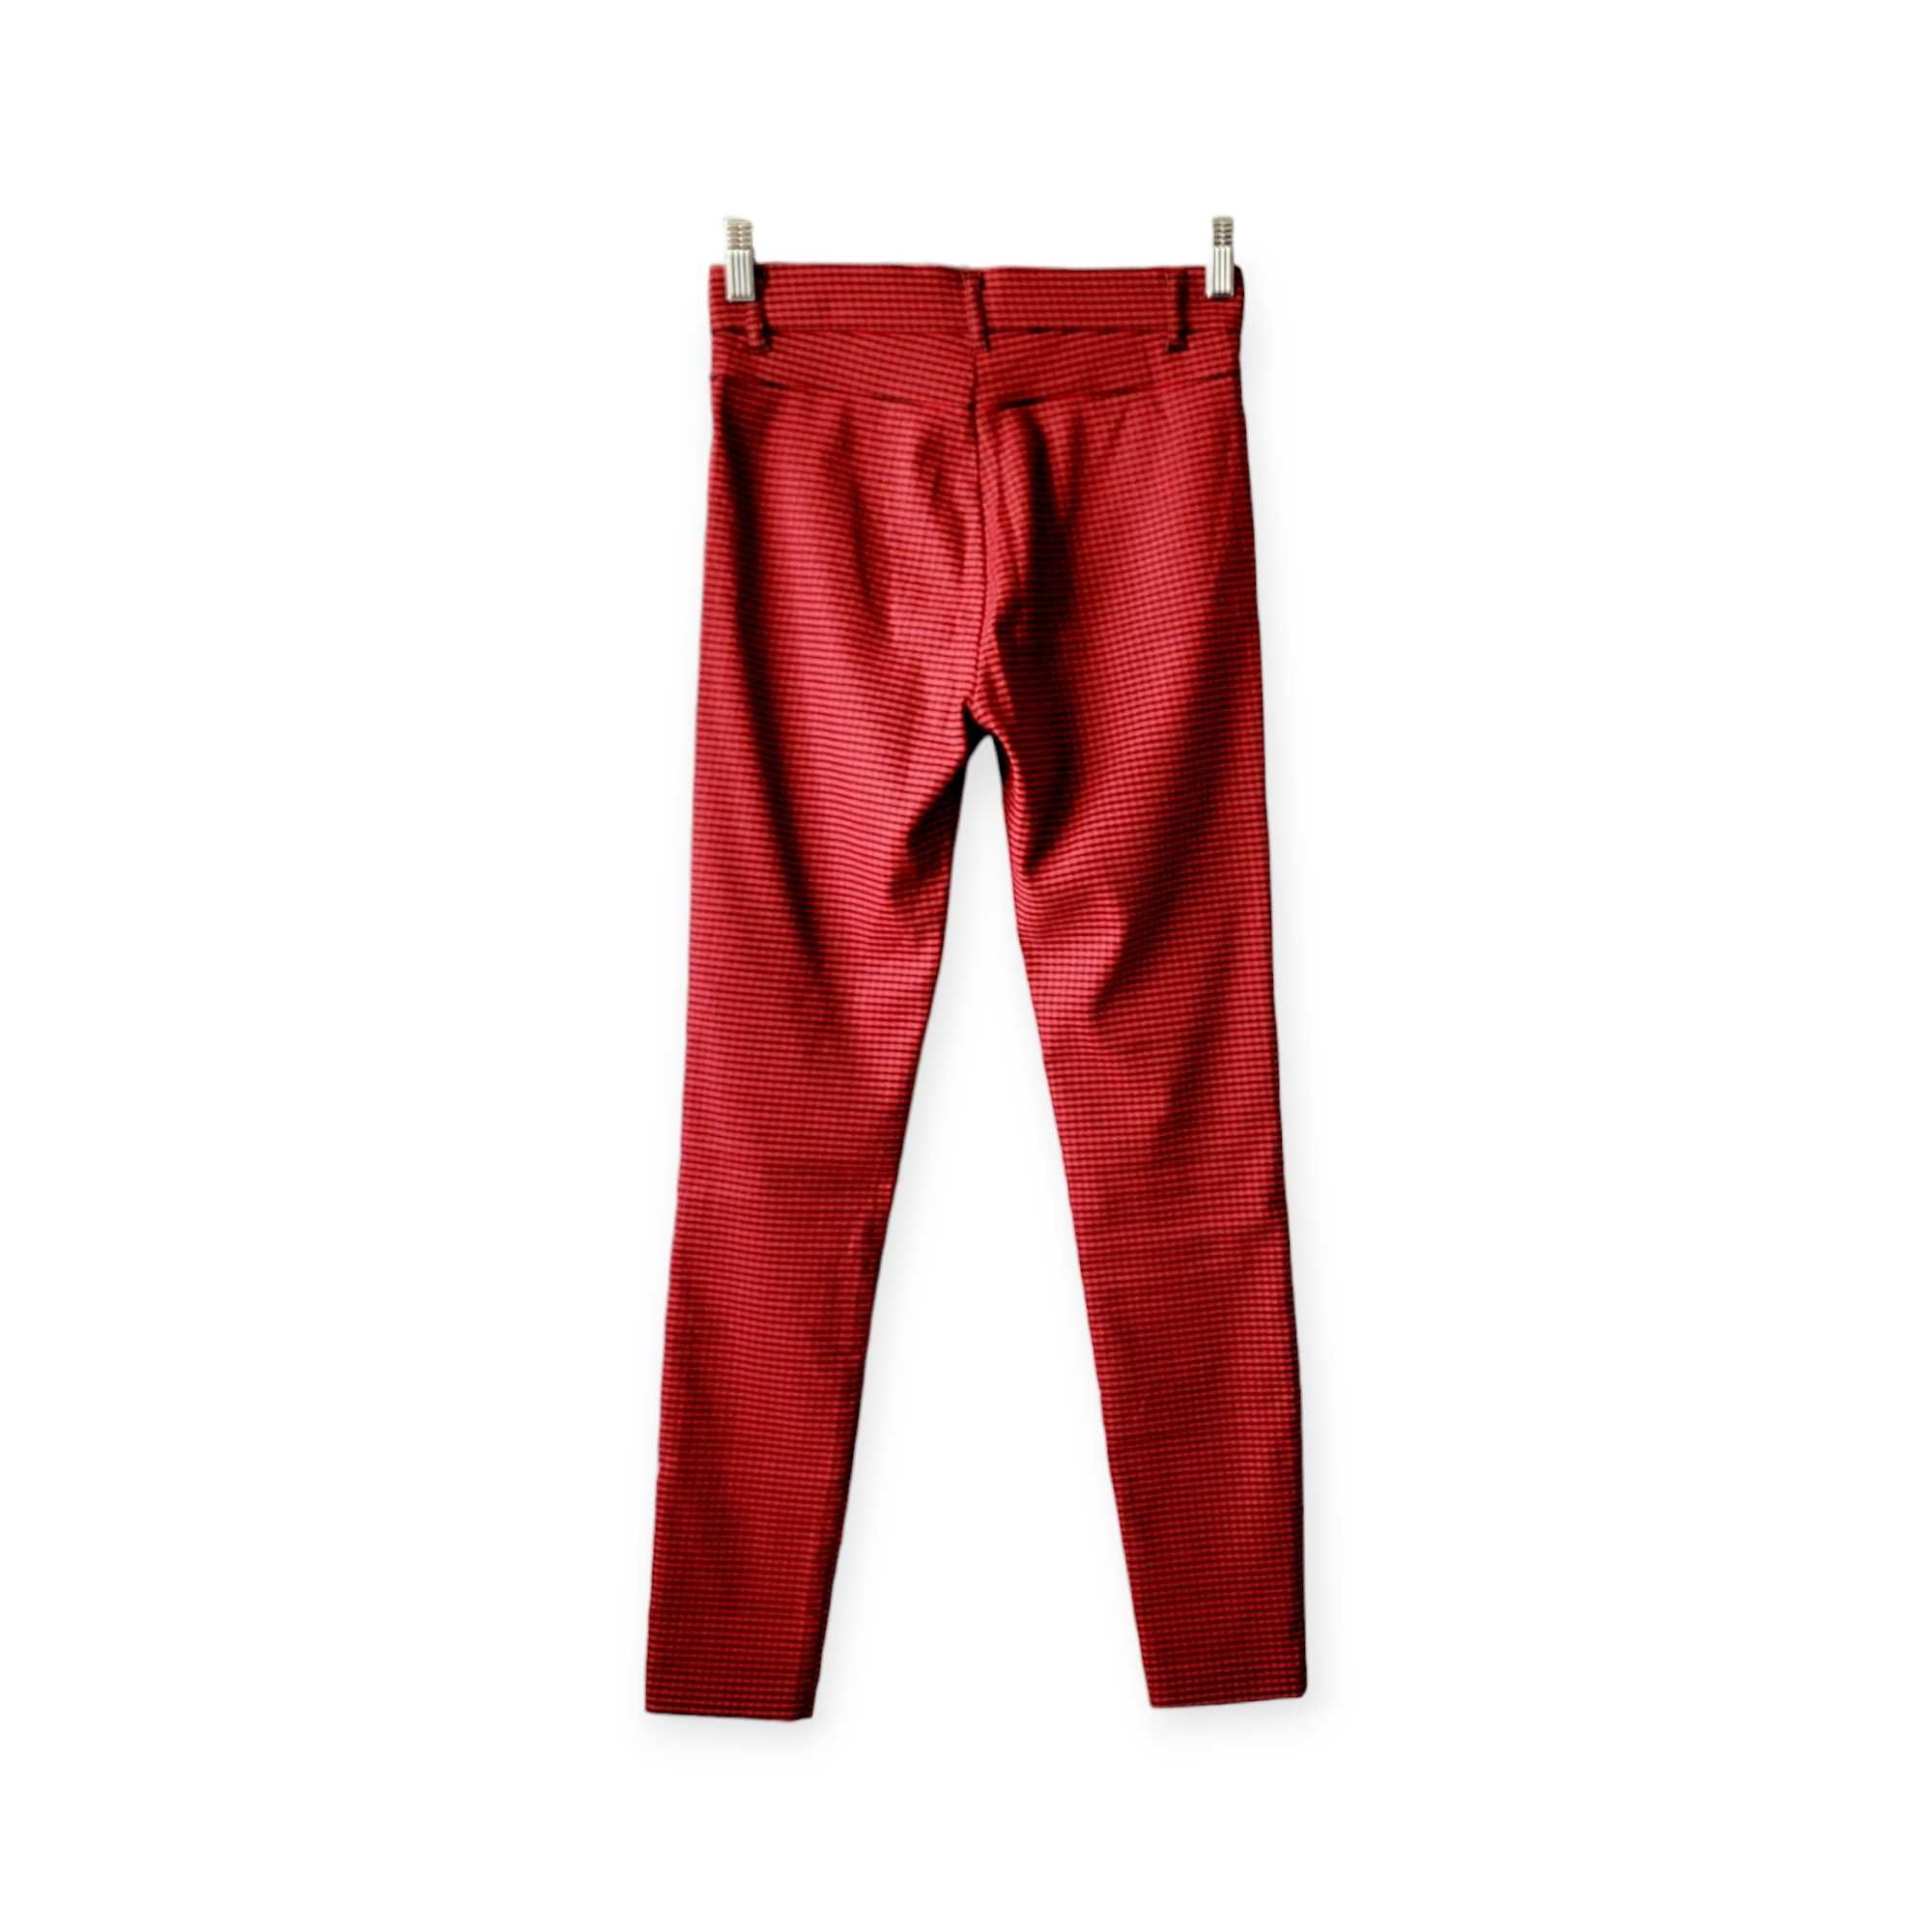 Czerwone czarne długie spodnie damskie S Zara wysoki stan w kratkę